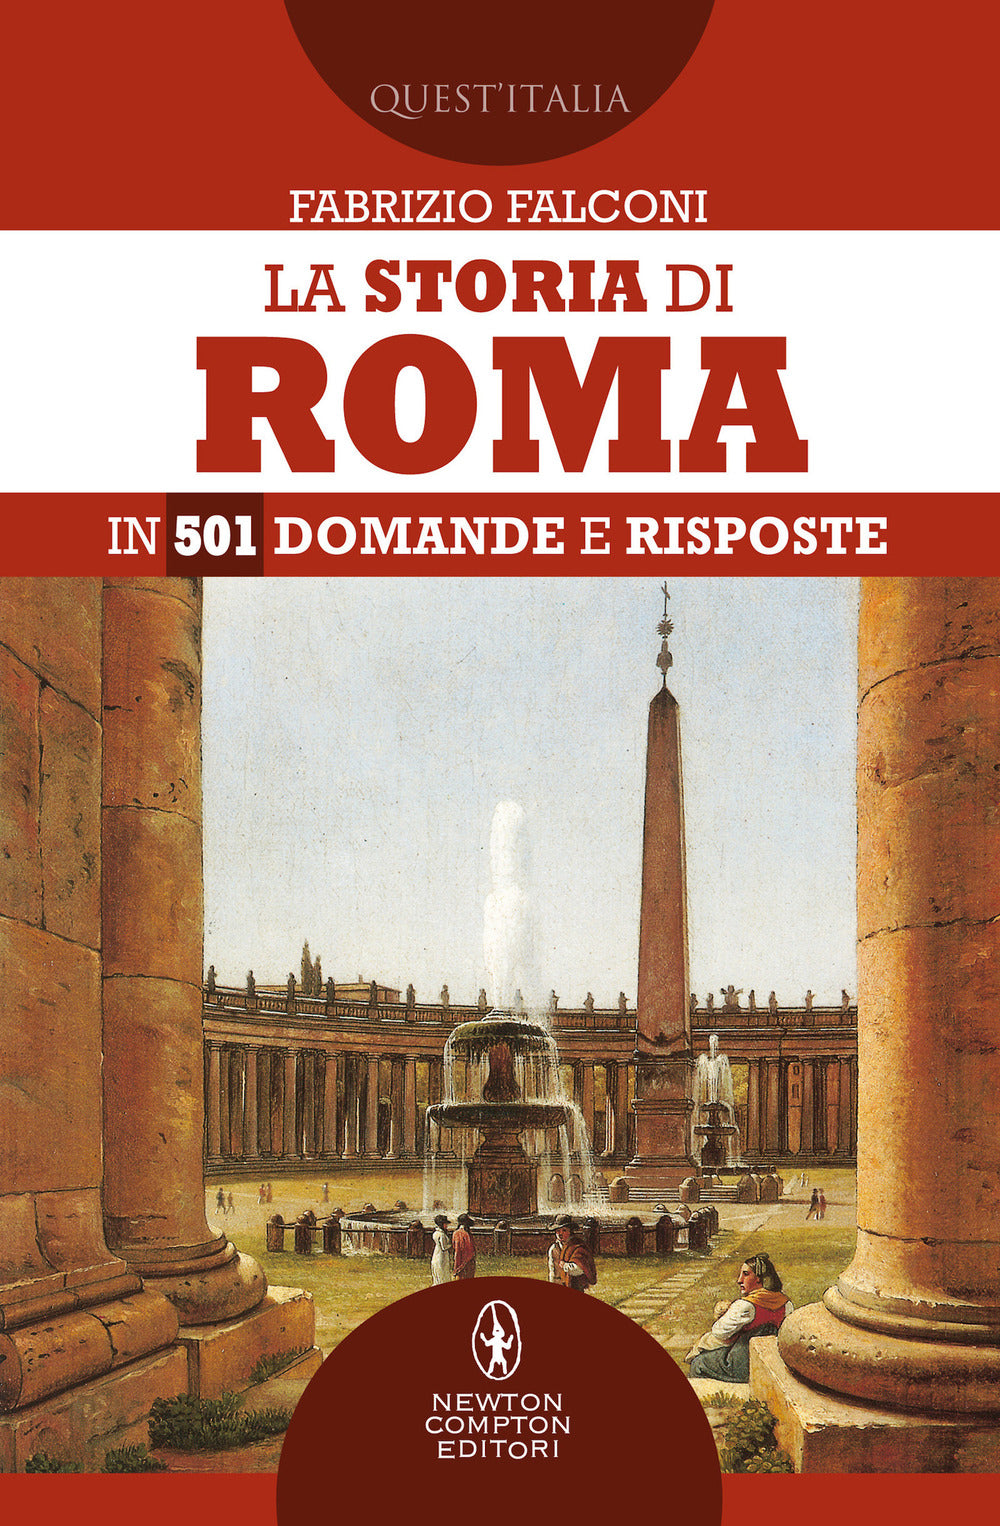 La storia di Roma in 501 domande e risposte.